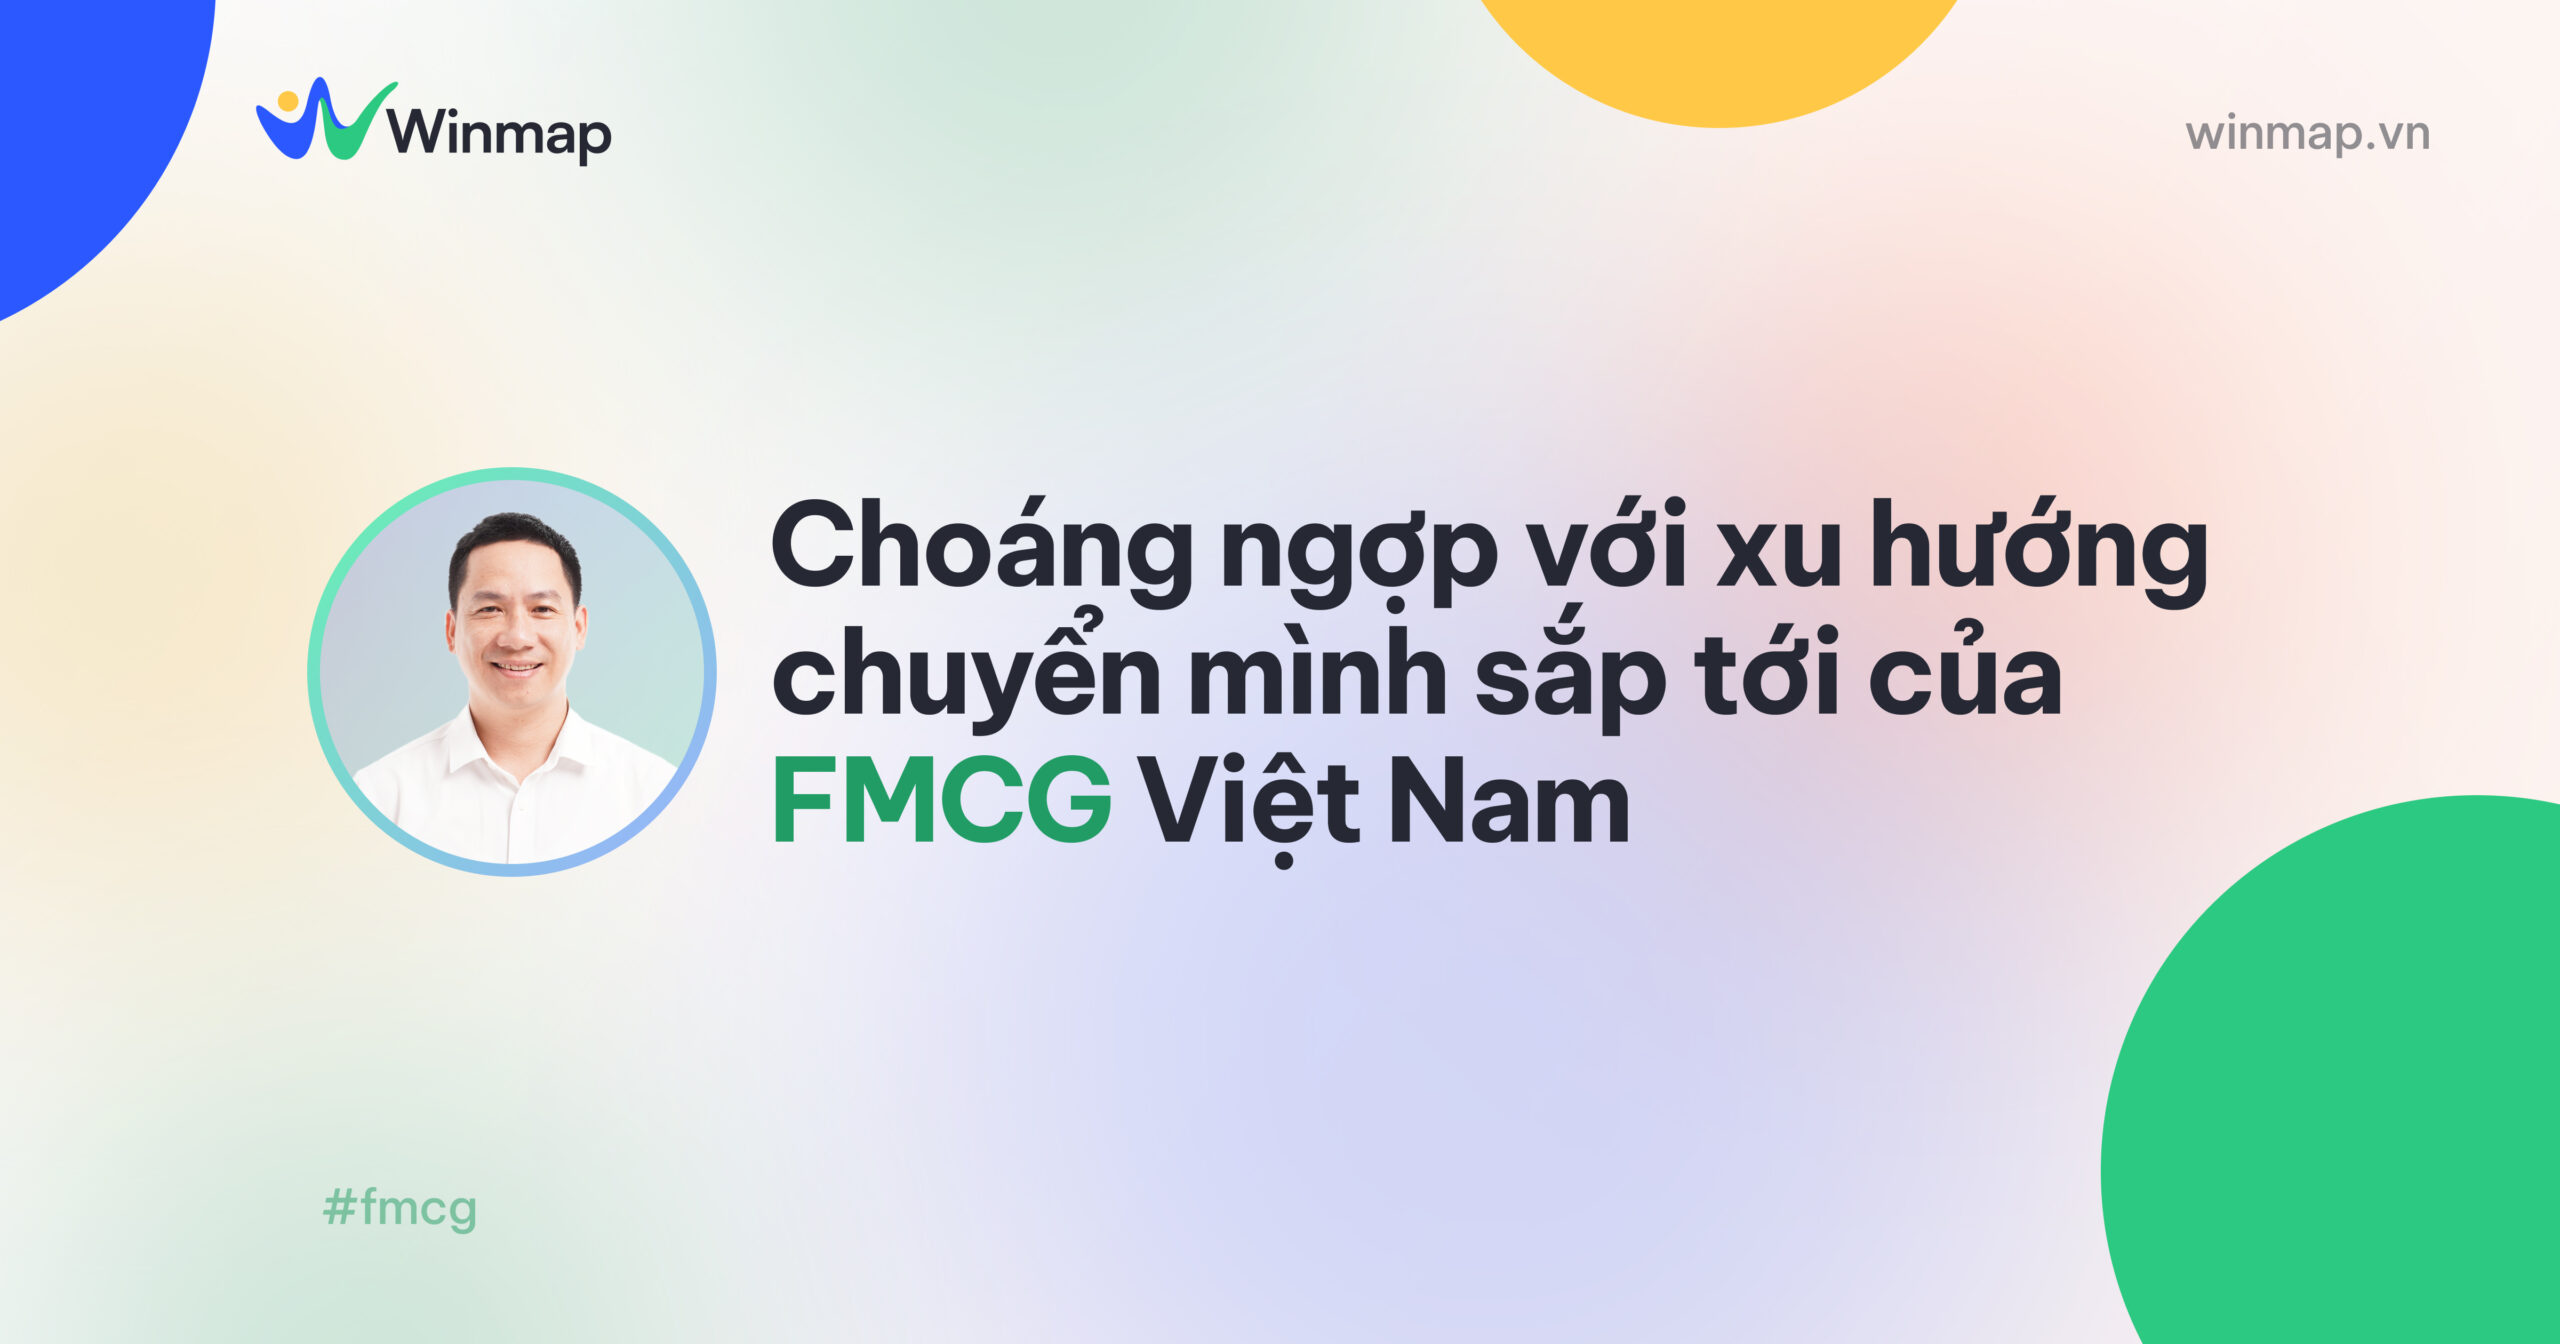 choang-ngop-voi-xu-huong-chuyen-minh-sap-toi-cua-fmcg-viet-nam